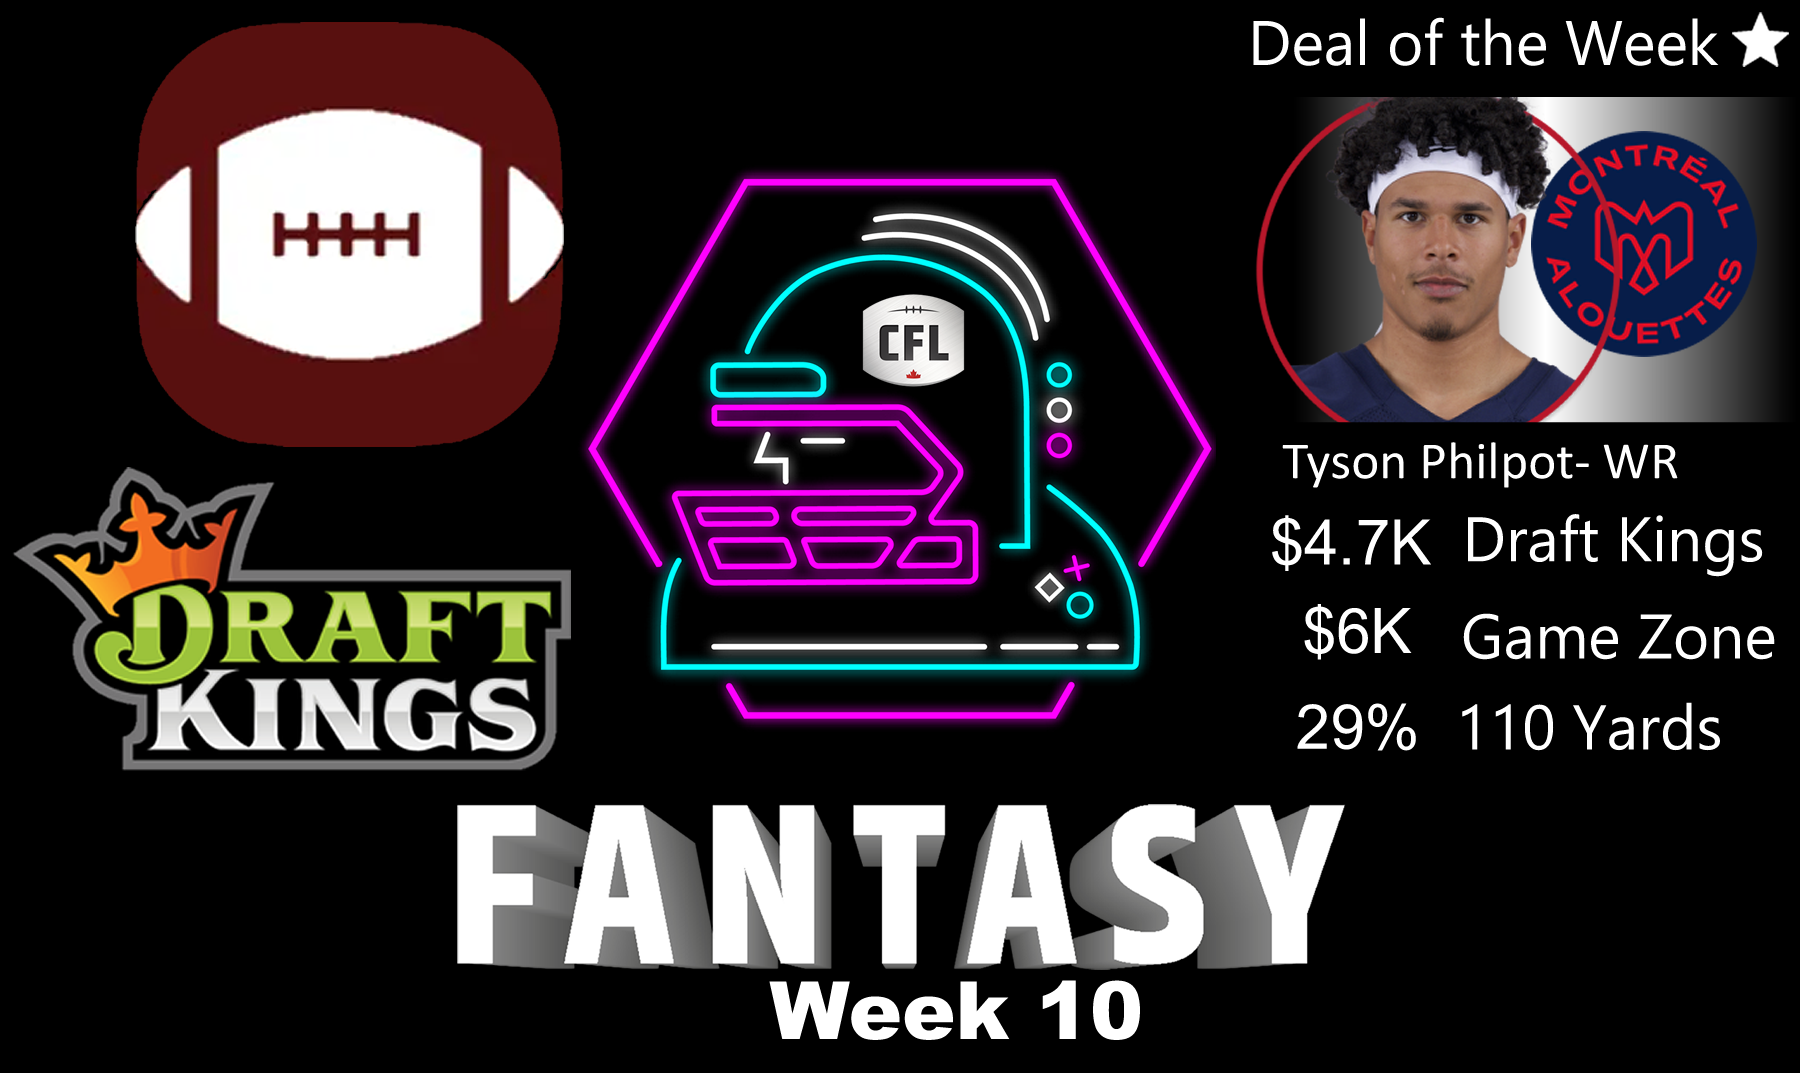 CFL Week 10 Fantasy Football Picks and Sleepers: Draft Kings, Game Zone,  110Yards Waivers